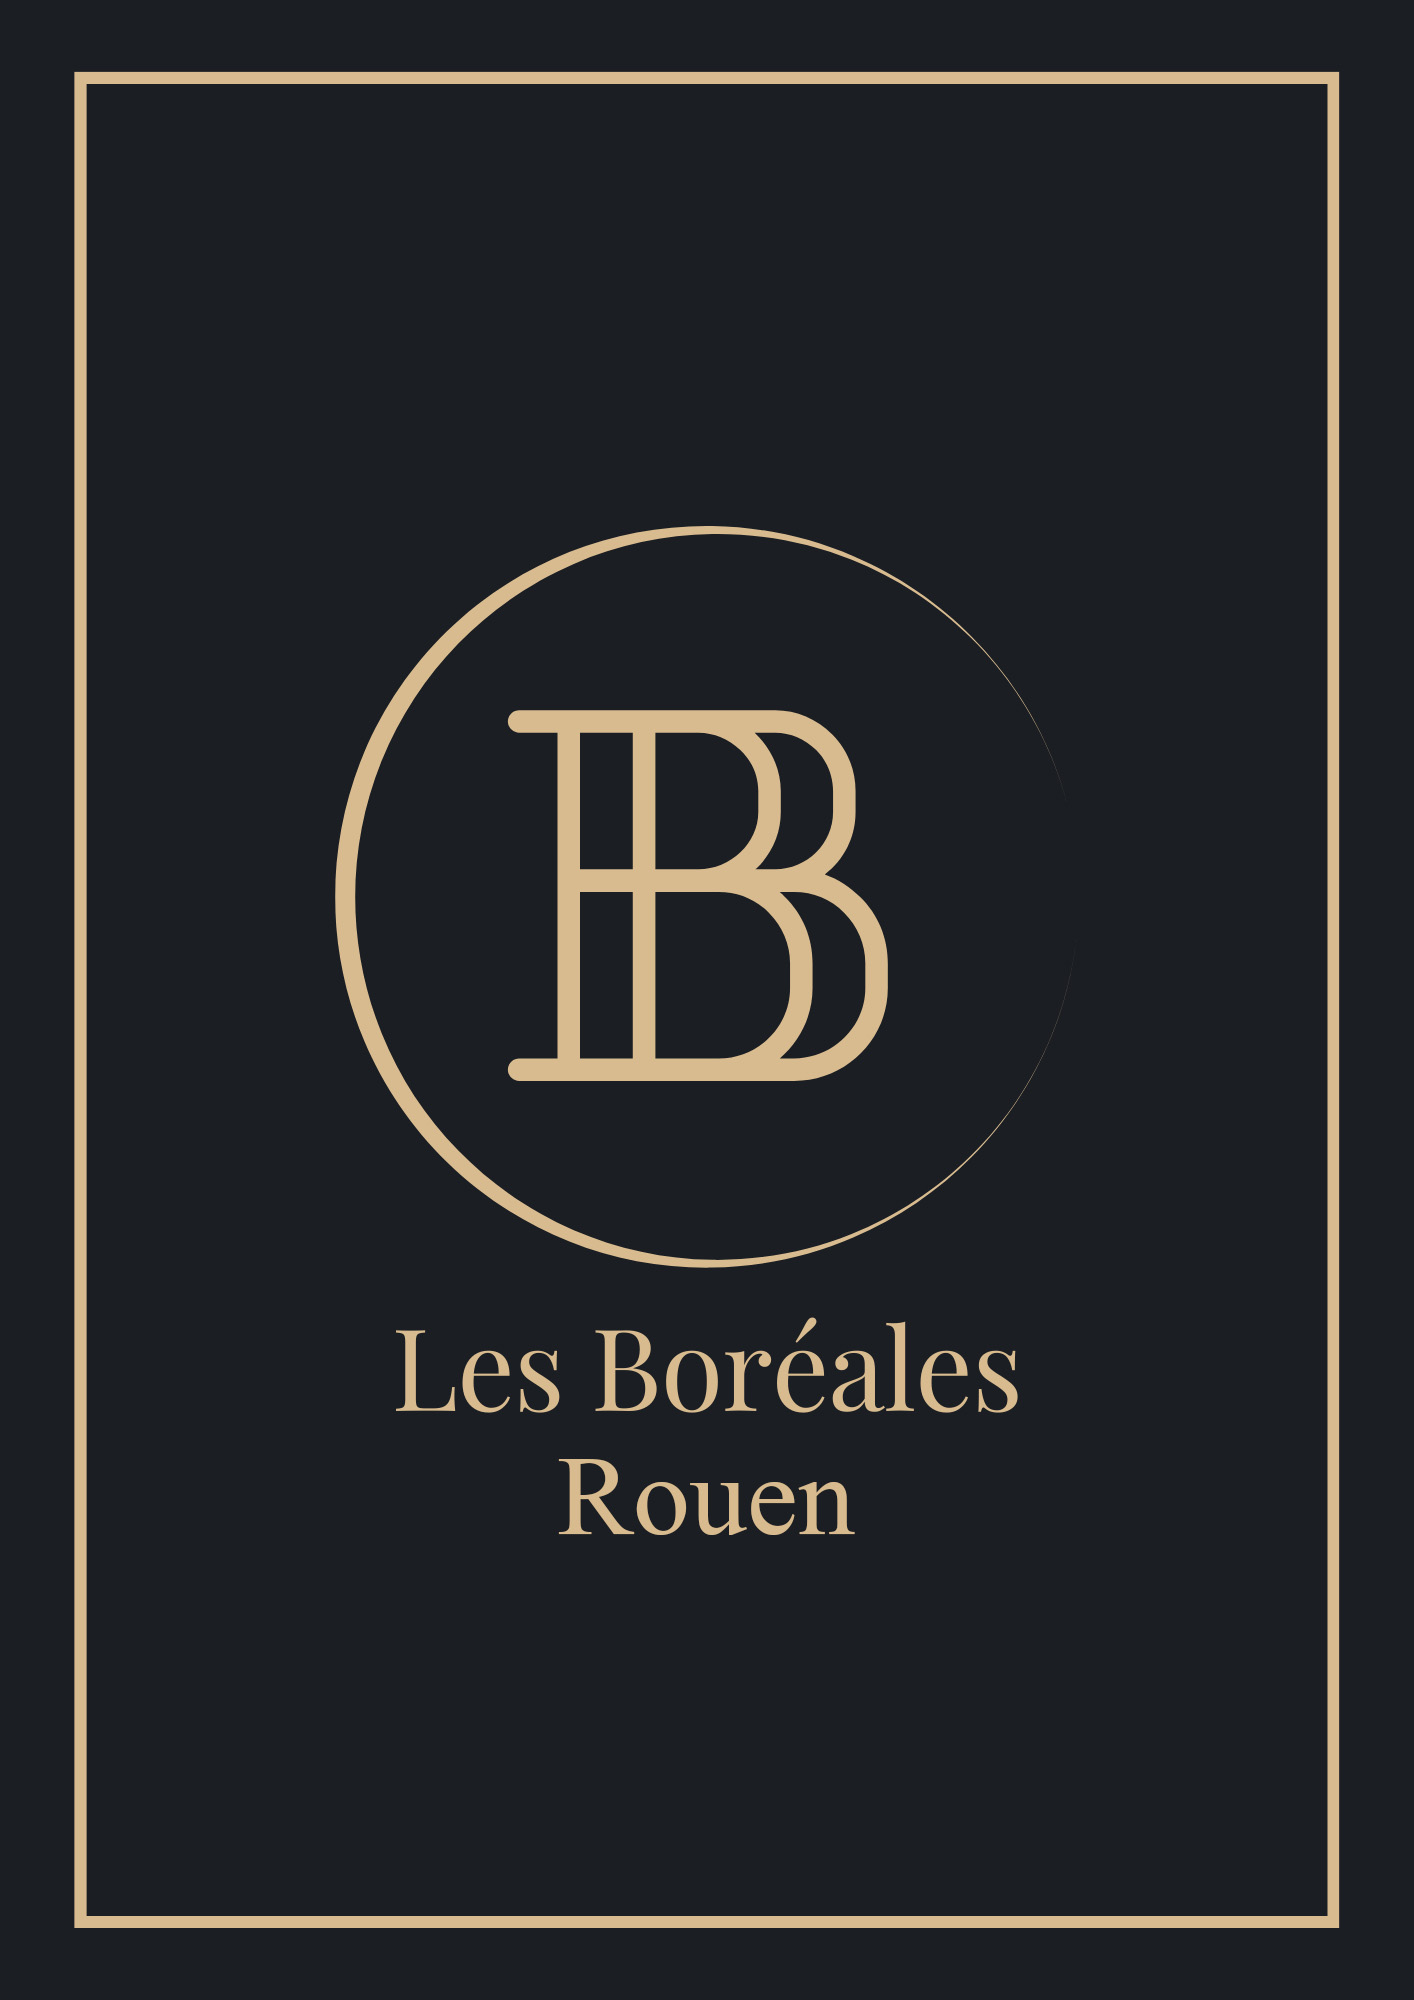 Restaurant Les Boréales Rouen